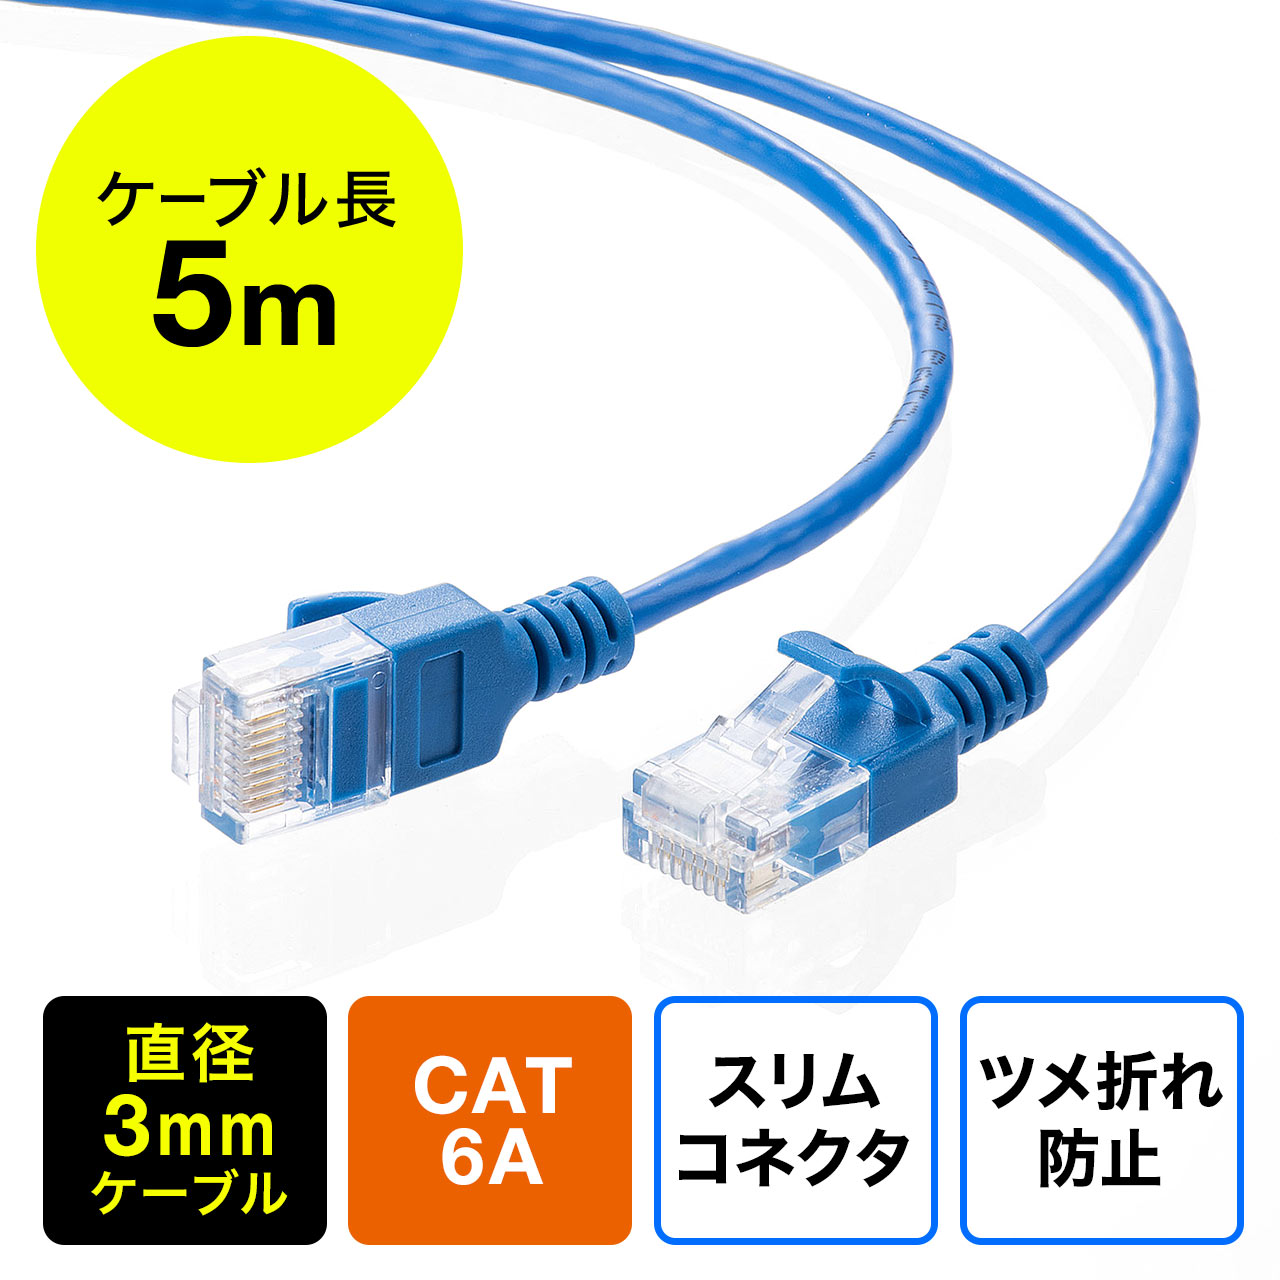 ツメ折れ防止CAT6A細径LANケーブル（カテゴリ6A・5m・爪折れ防止カバー 